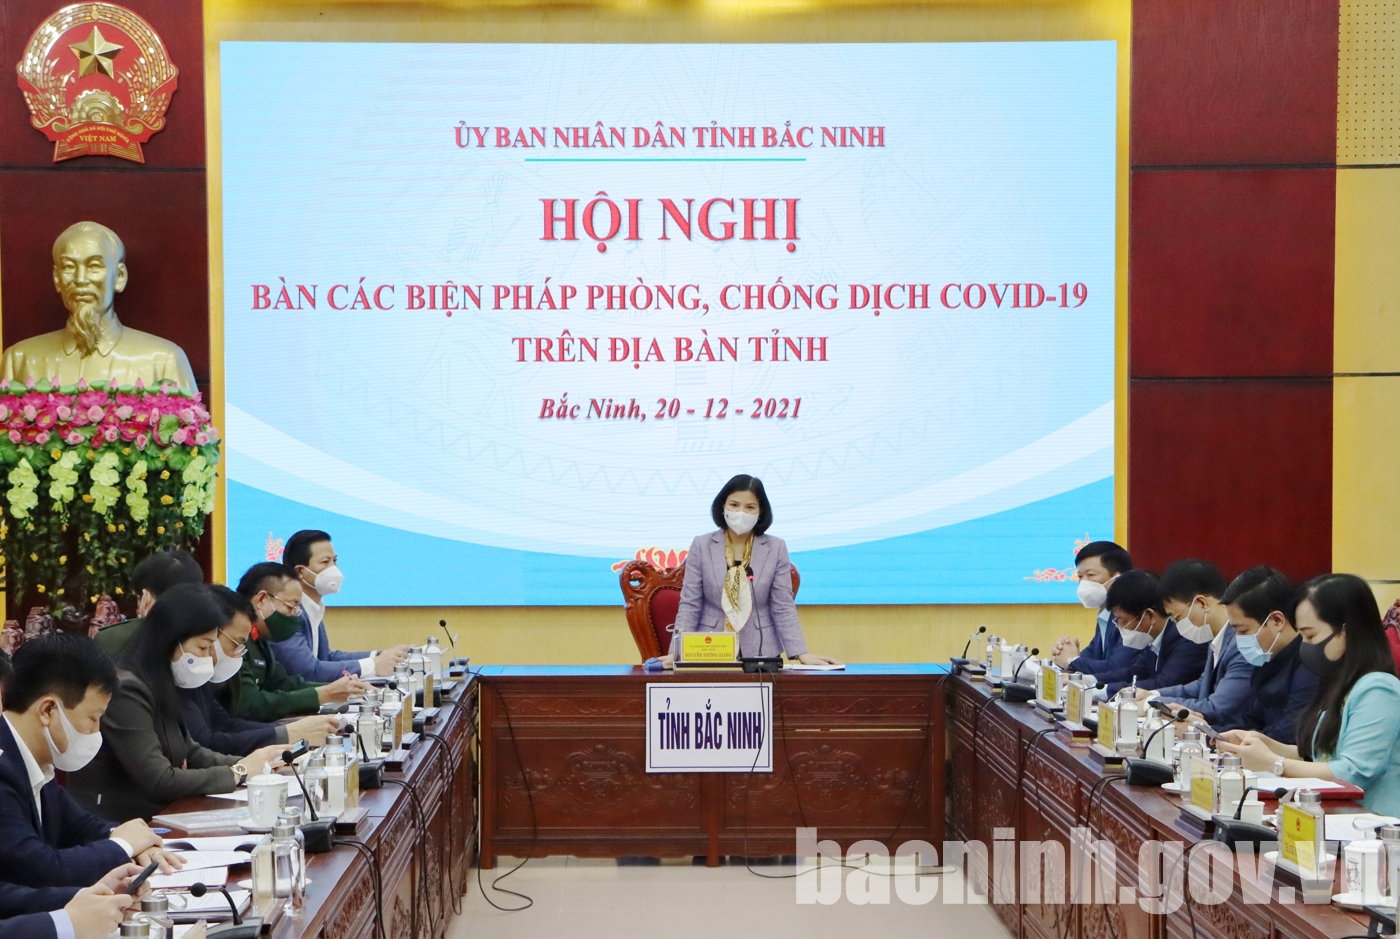 Hội nghị bàn các biện pháp phòng, chống dịch Covid-19 trên địa bàn tỉnh Bắc Ninh